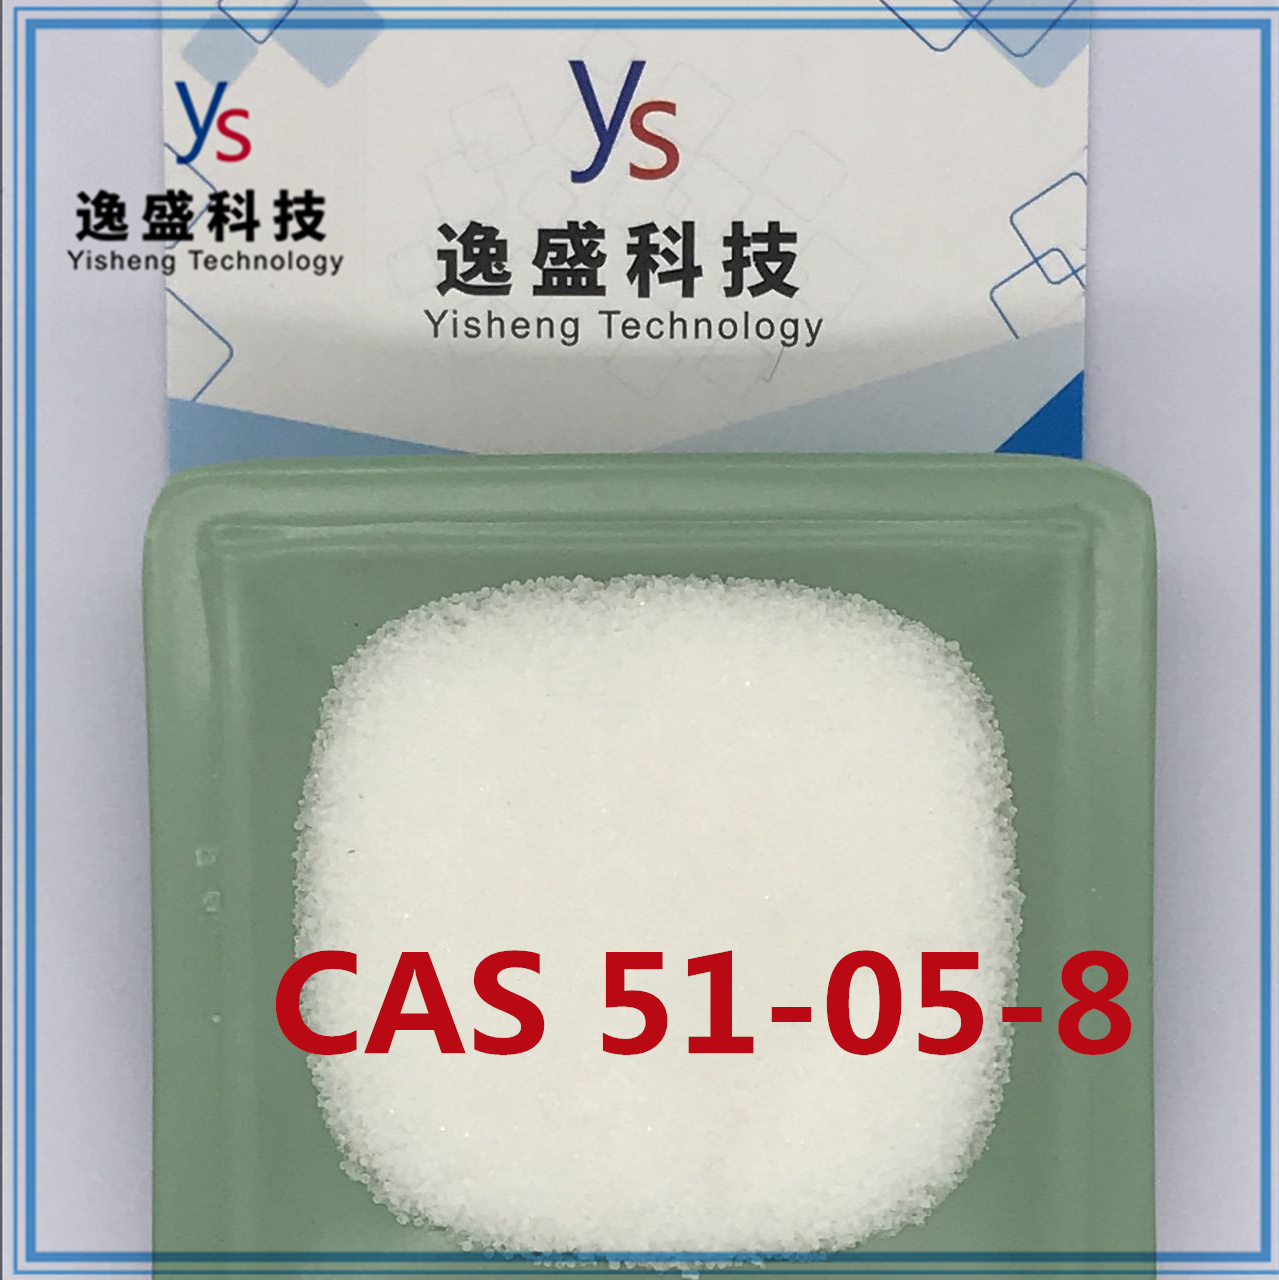 Hoge zuiverheid CAS 51-05-8 met voldoende voorraad in China